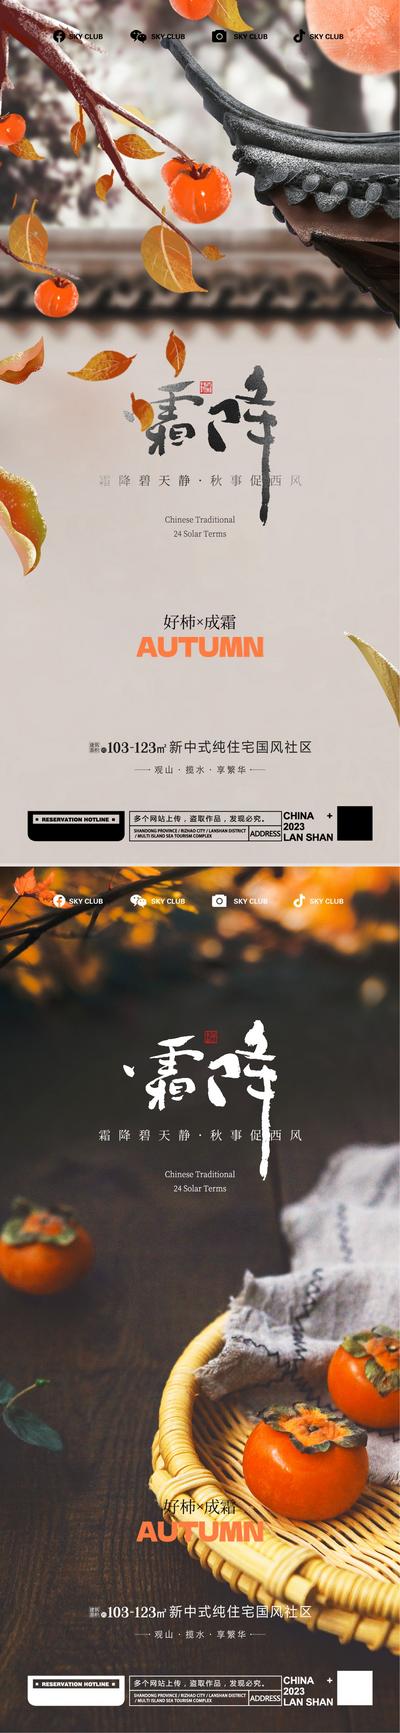 南门网 广告 海报 节气 霜降 插画 水墨 系列 简约 品质